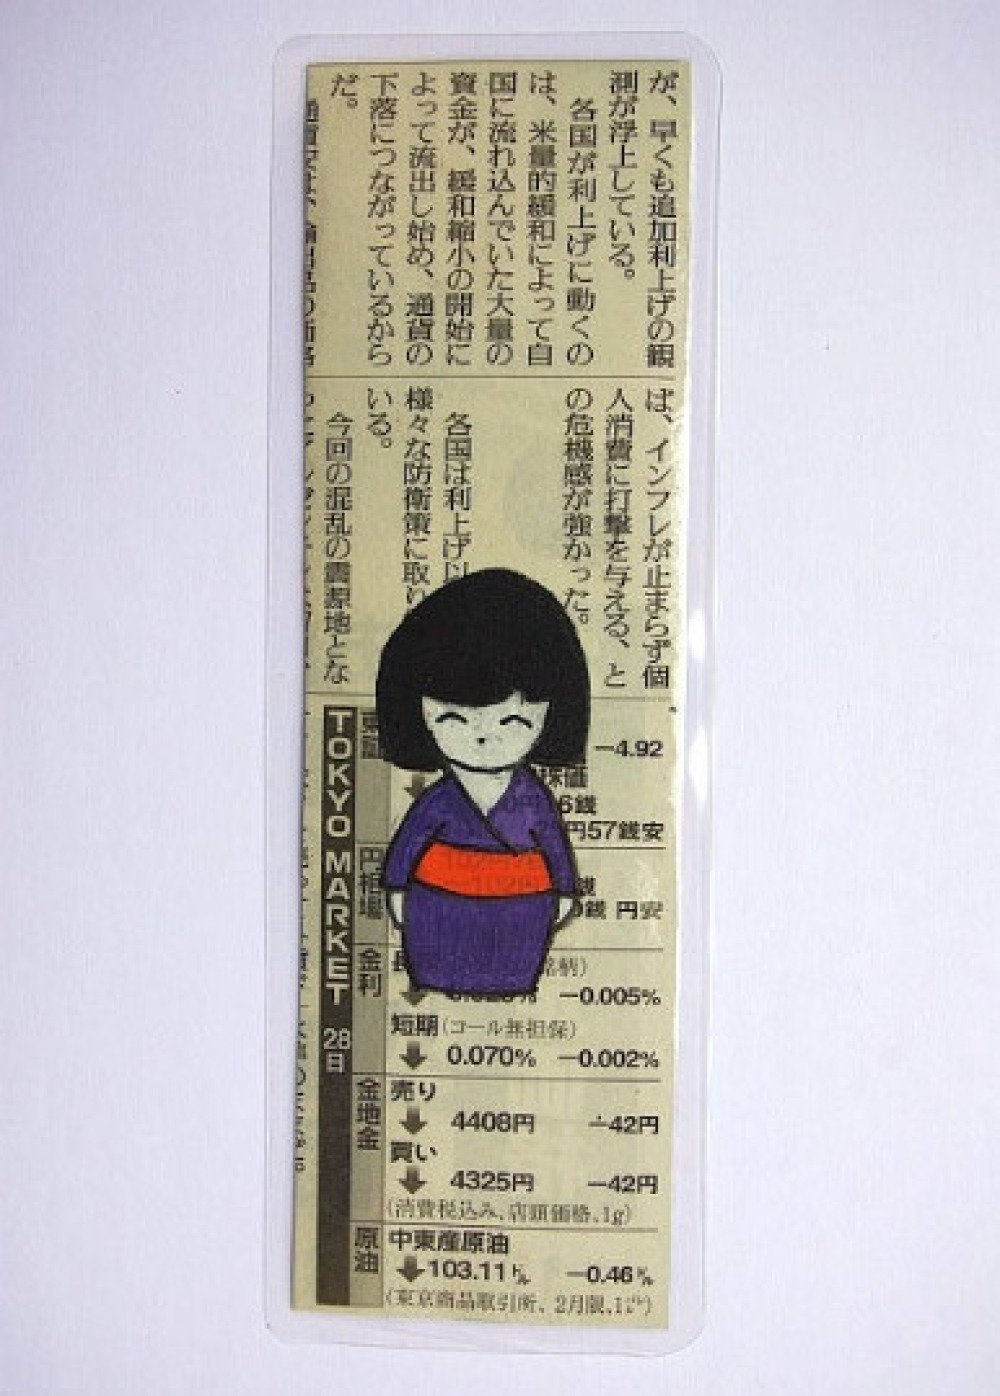 Marque-pages style japonais plastifié - Un grand marché